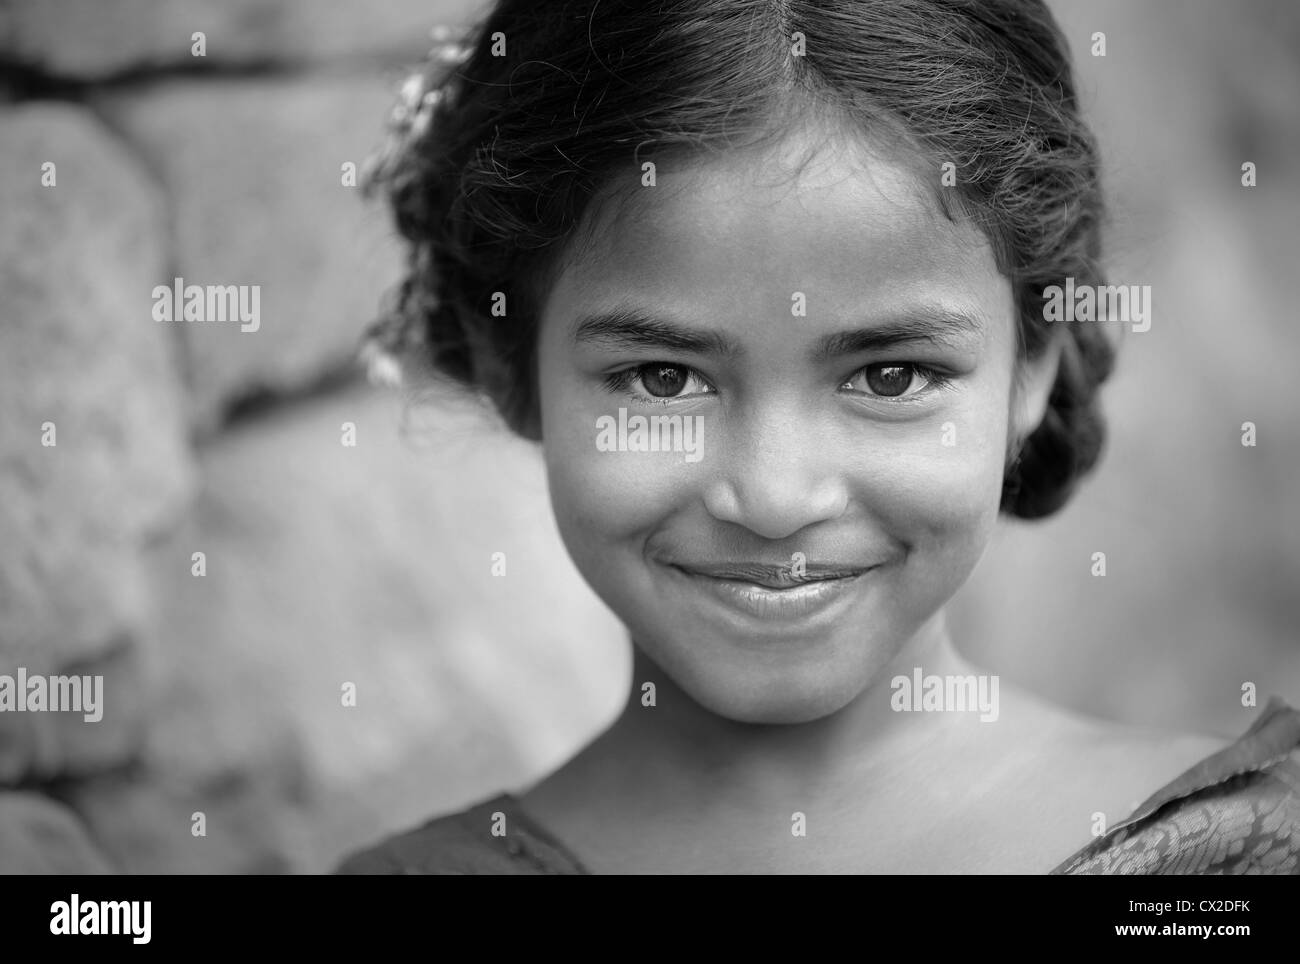 Girl portrait indien de l'Andhra Pradesh en Inde du Sud, monochrome Banque D'Images